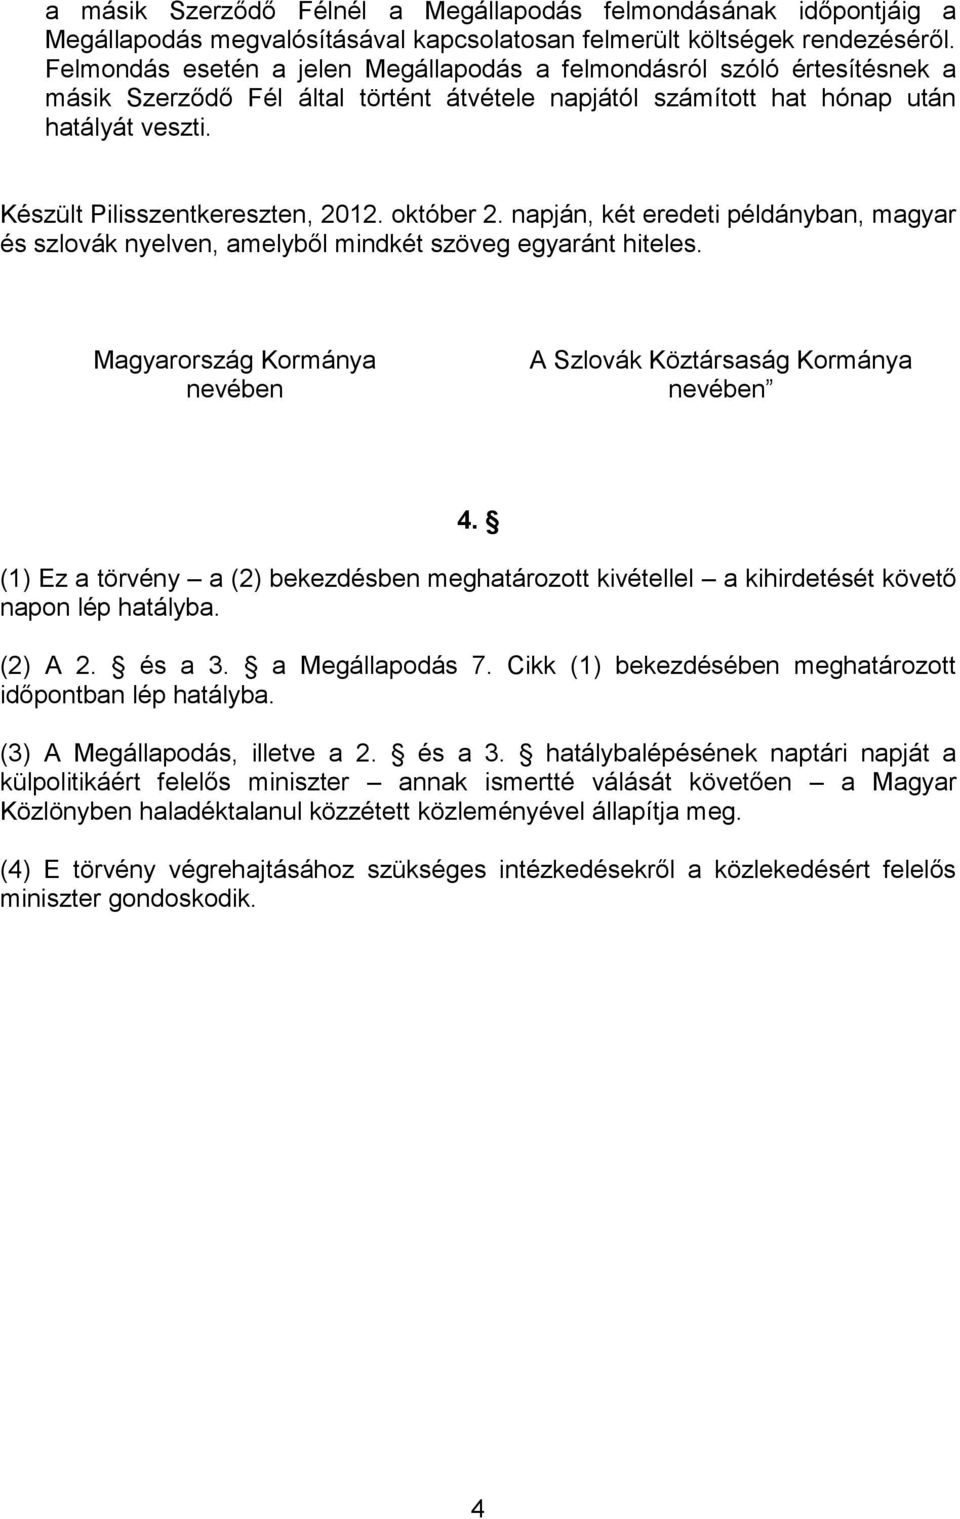 Készült Pilisszentkereszten, 2012. október 2. napján, két eredeti példányban, magyar és szlovák nyelven, amelyből mindkét szöveg egyaránt hiteles.